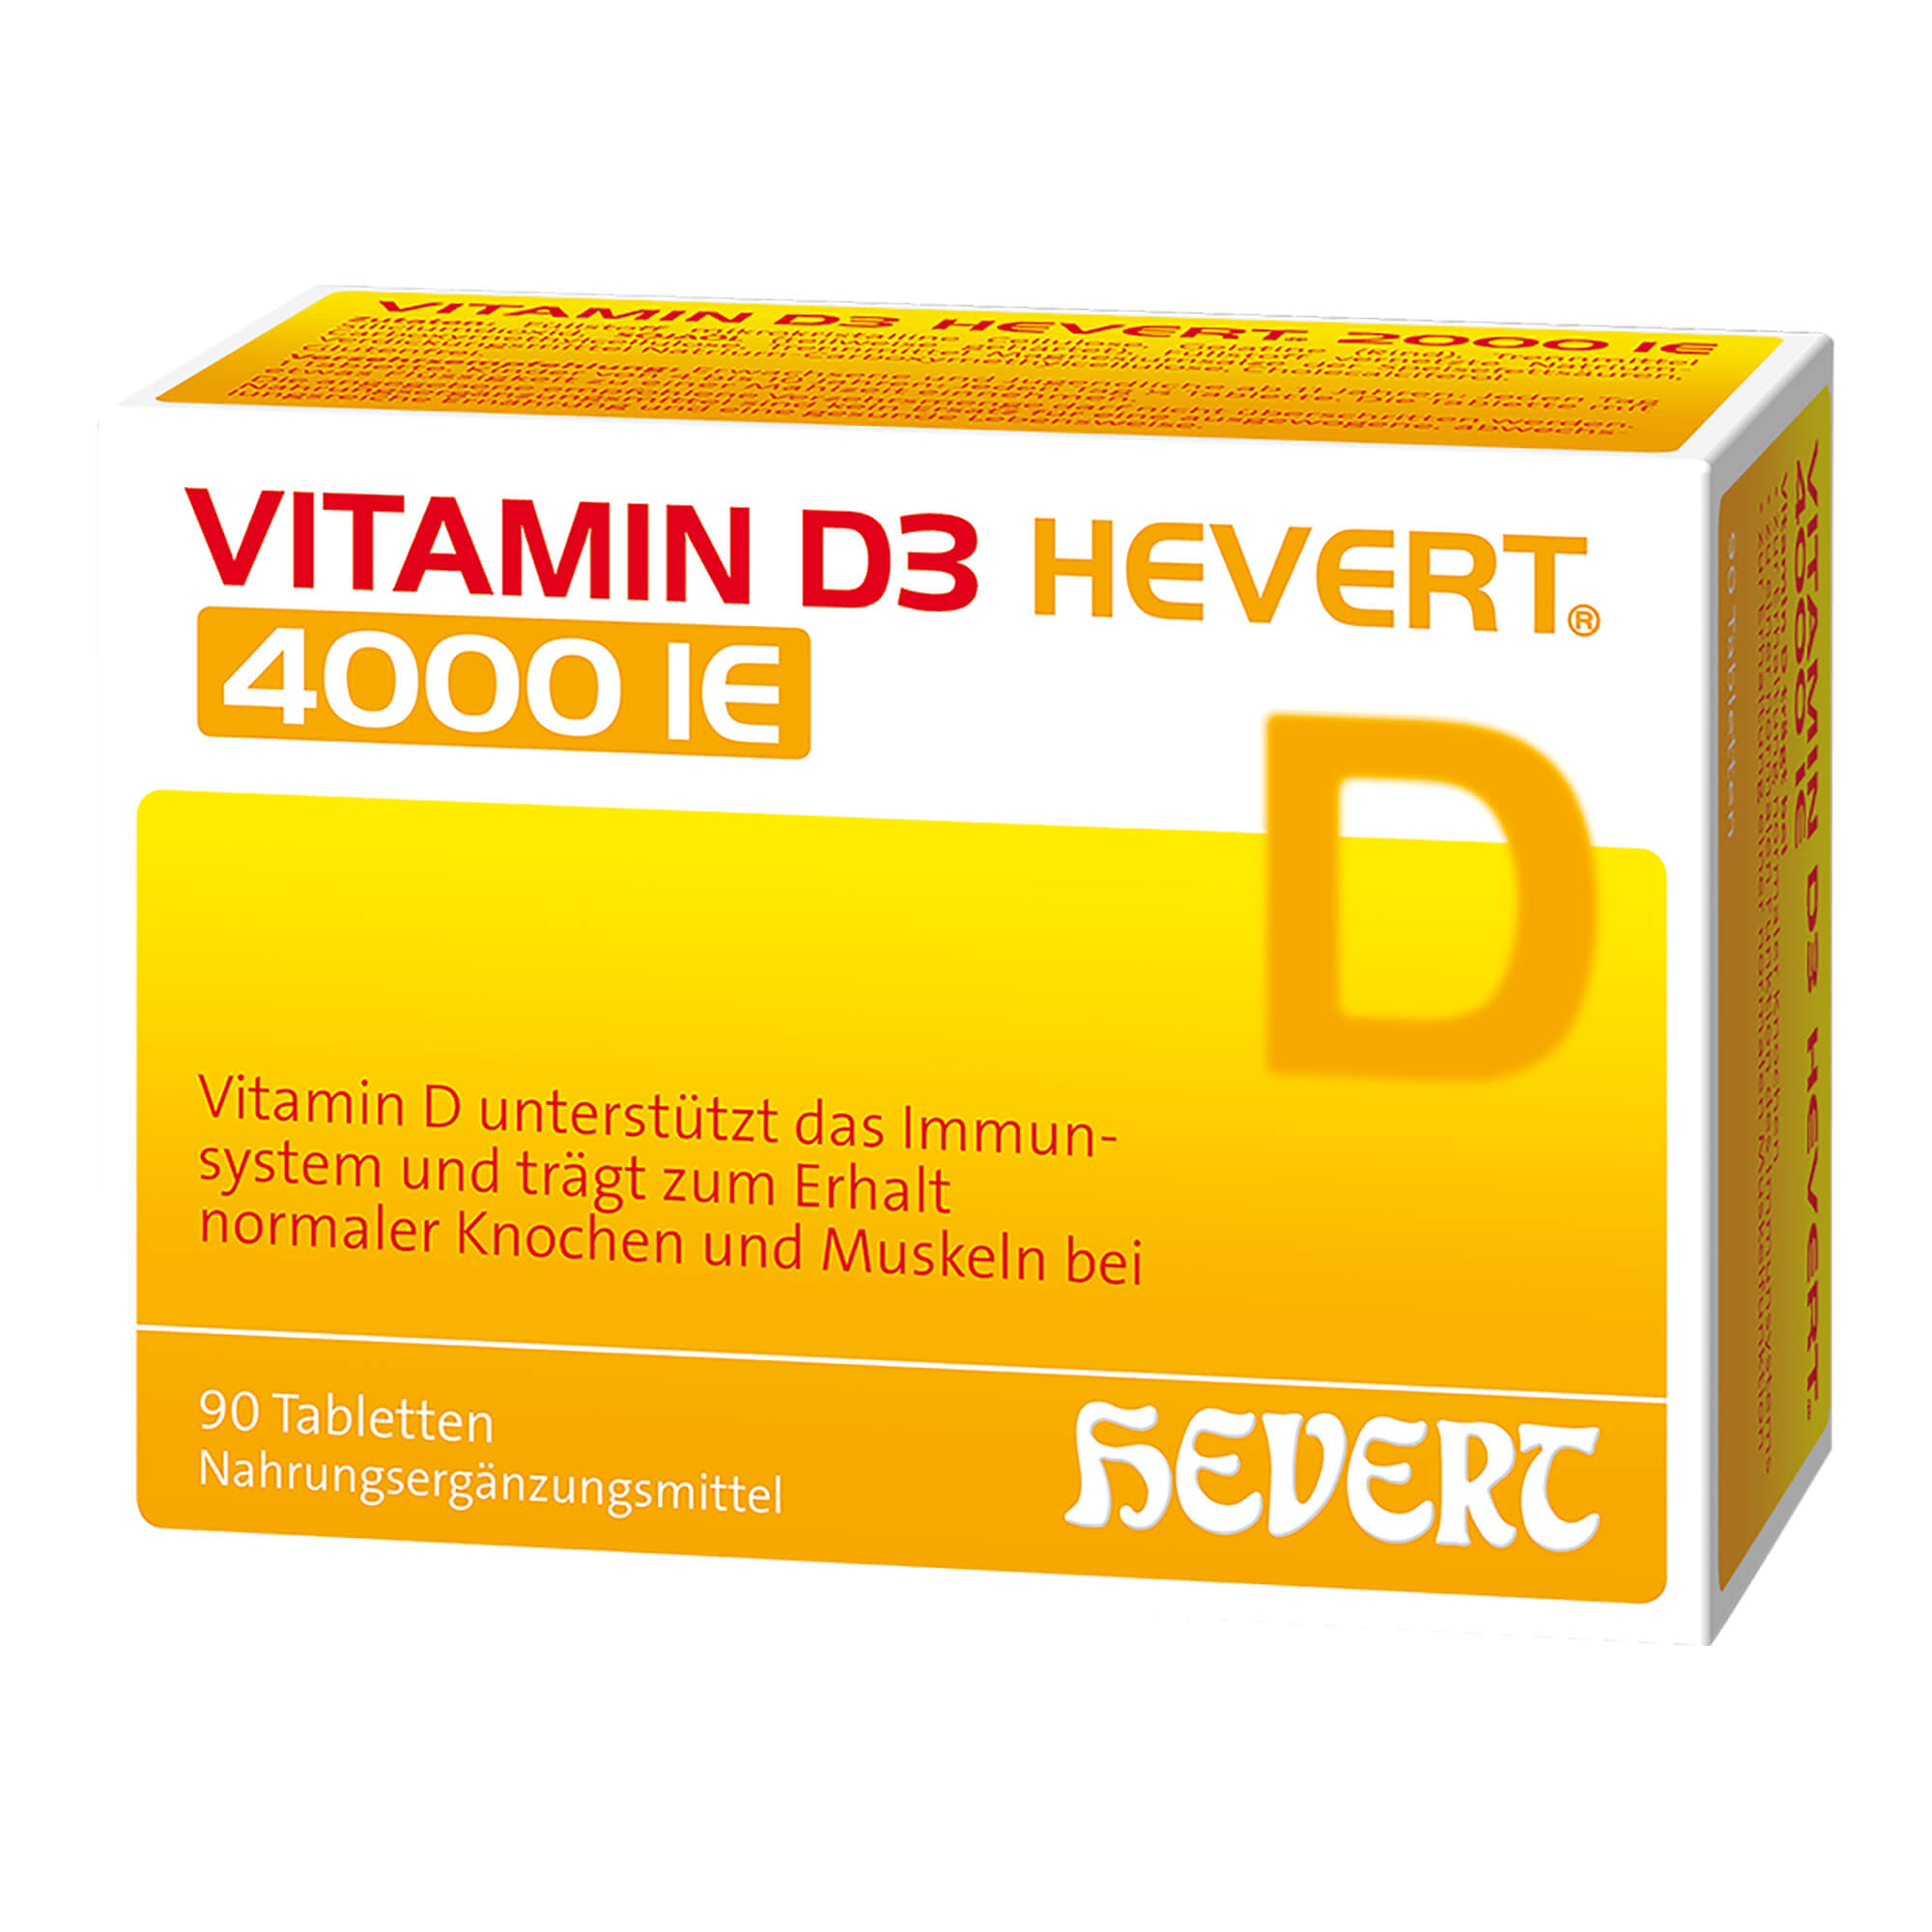 Nahrungsergänzungsmittel zur Behandlung und Vorbeugung von Vitamin D-Mangelerkrankungen.